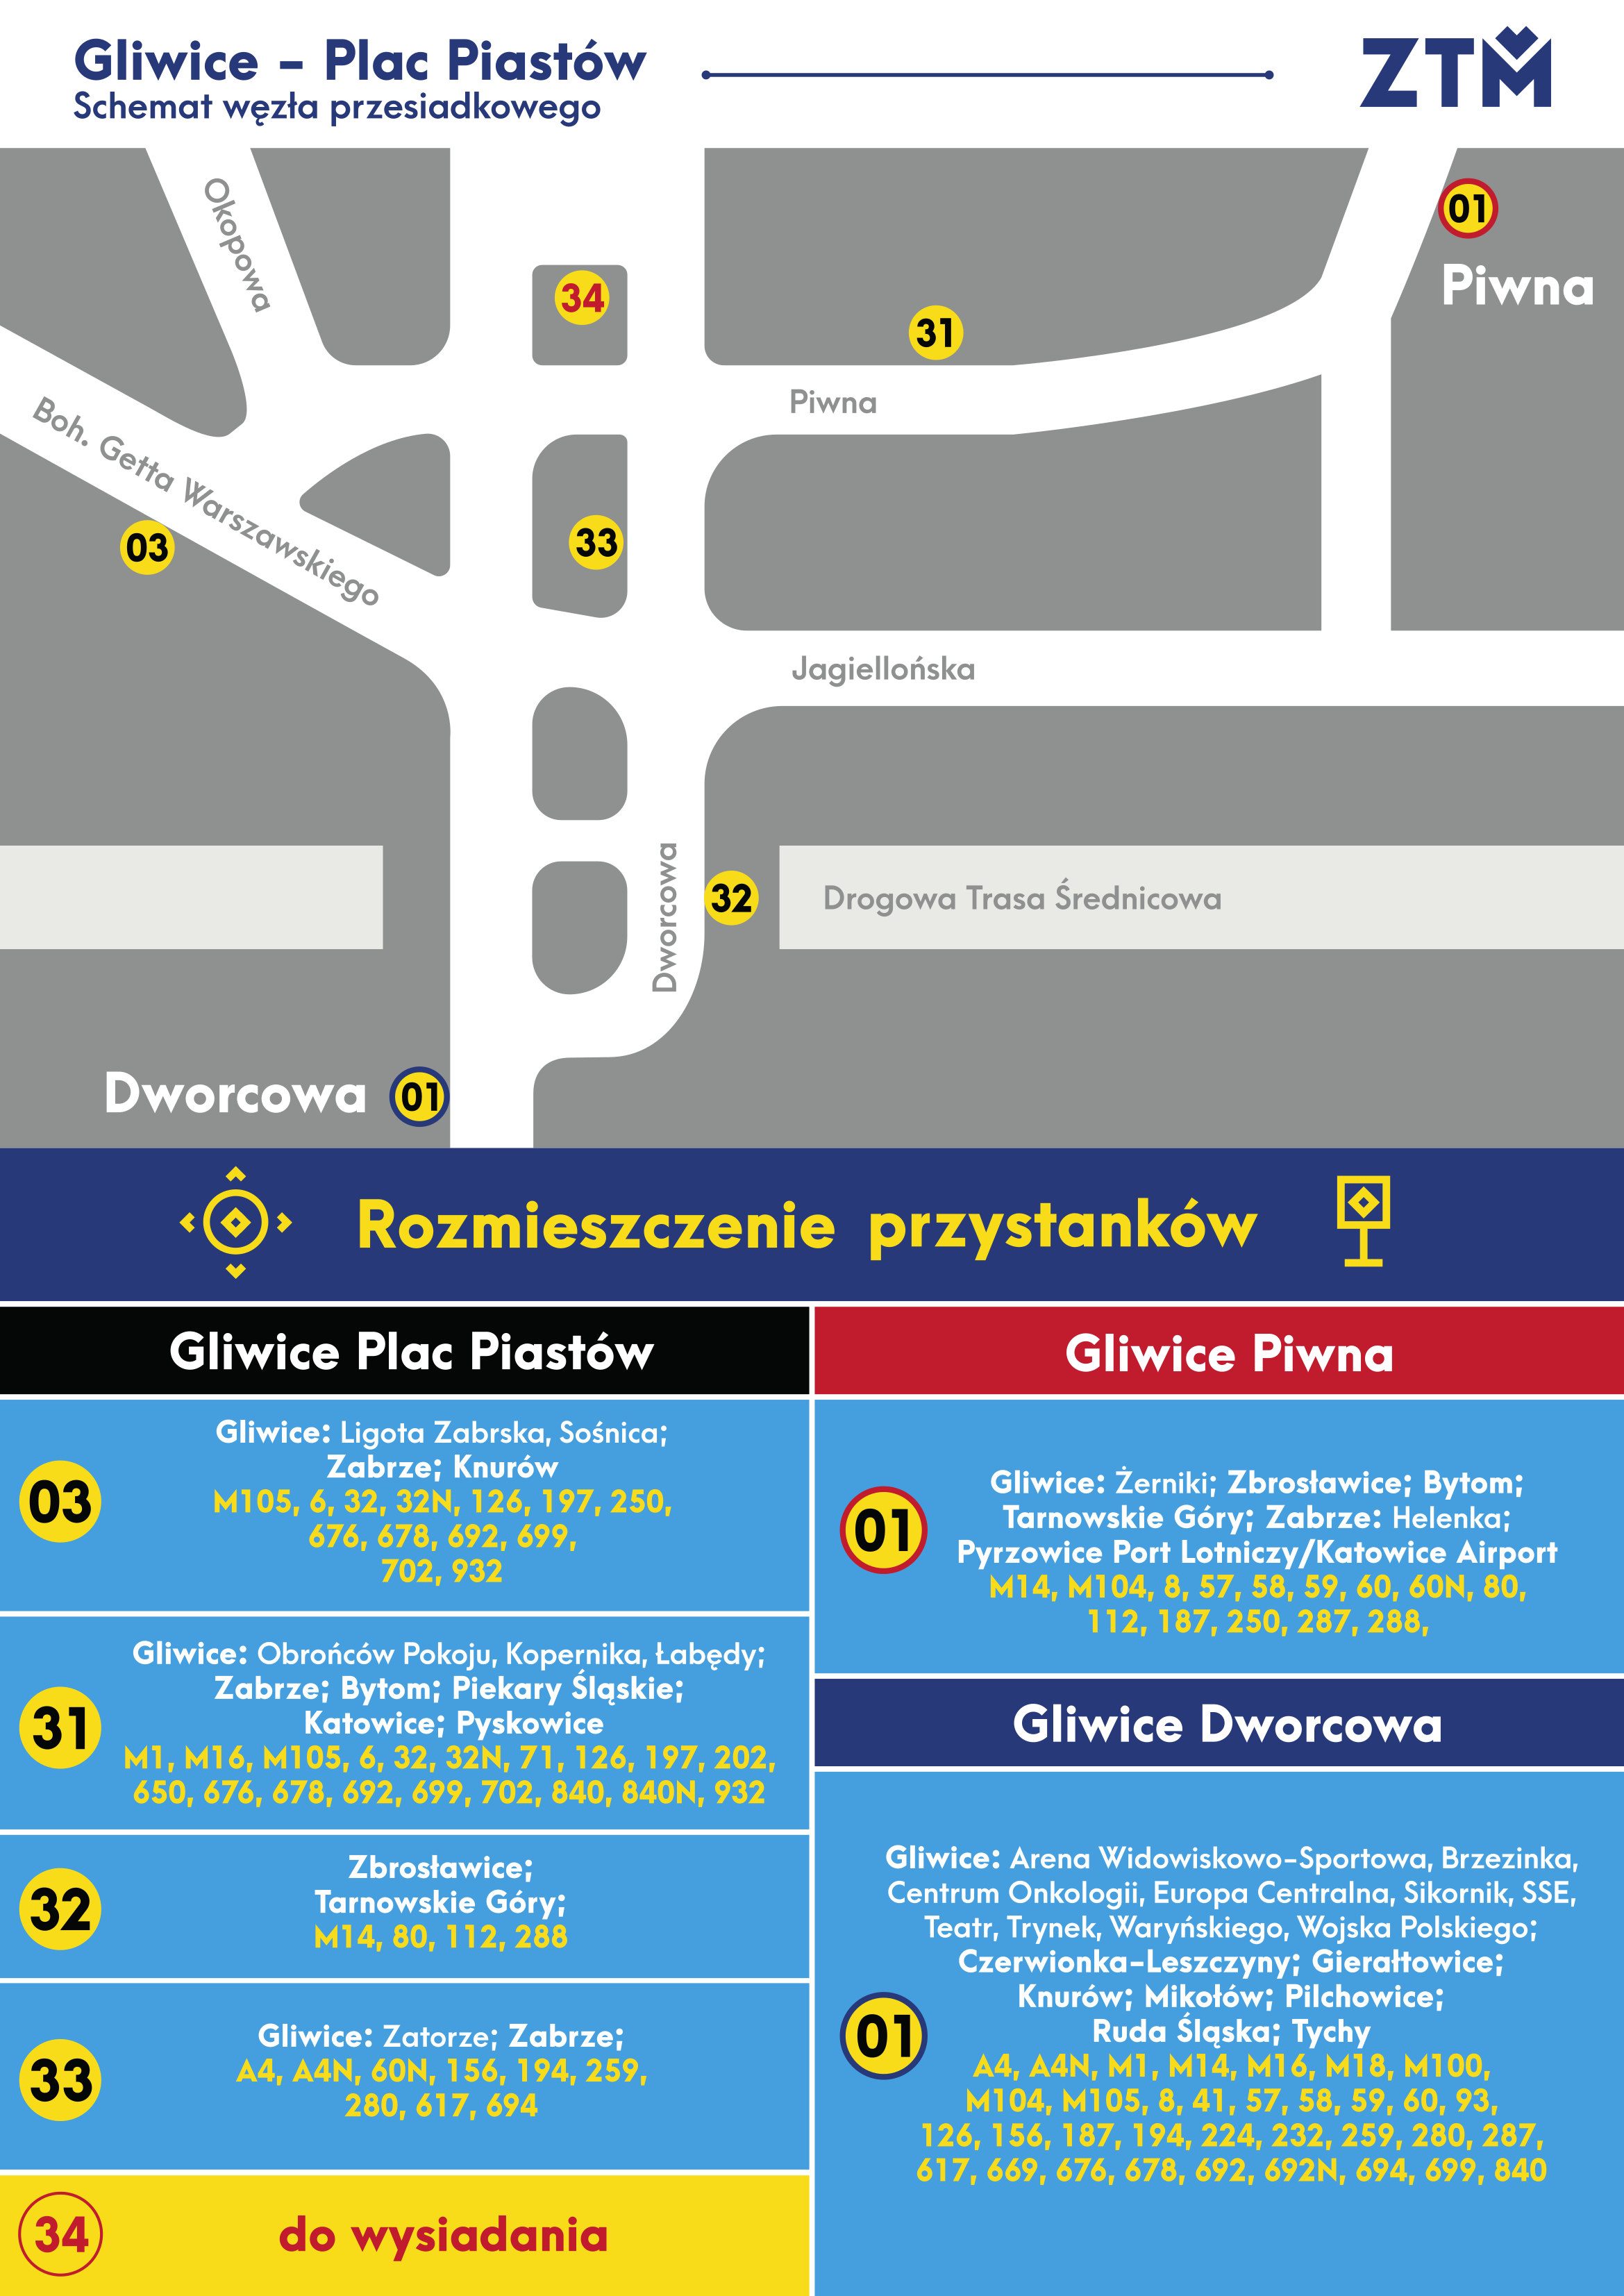 Gliwice Plac Piastów